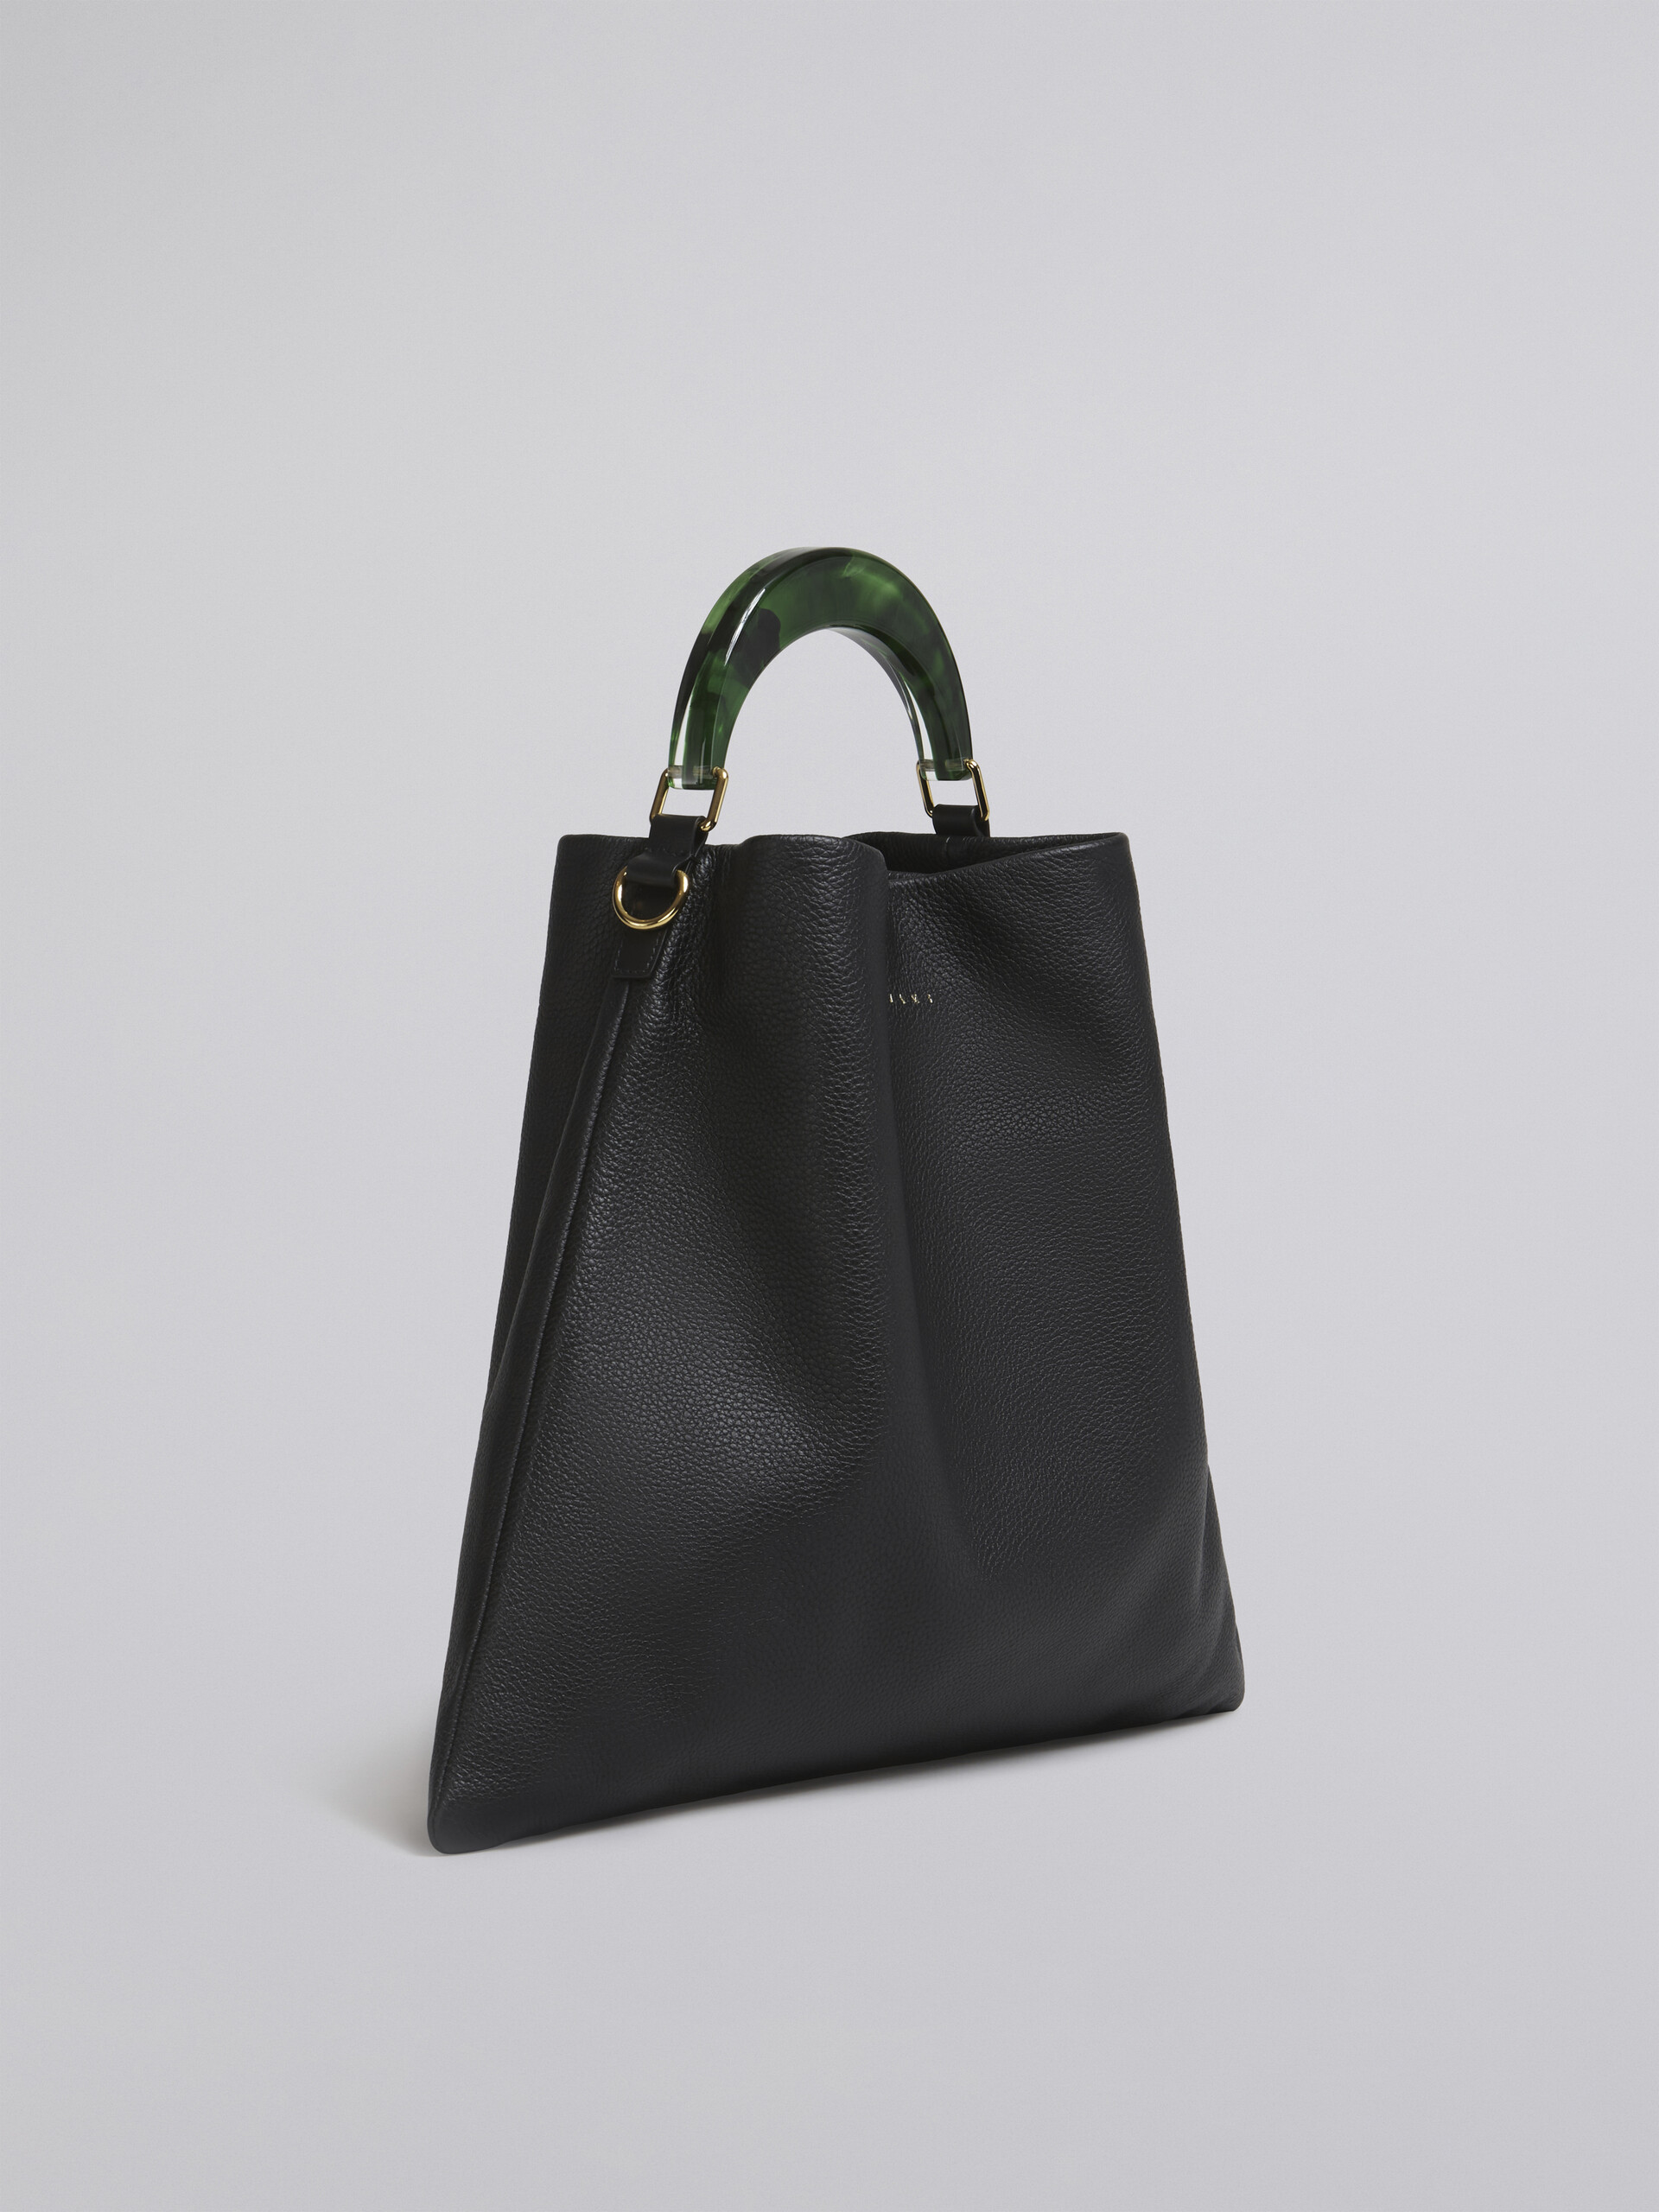 HOBO bag in black grained calfskin and resin handle - Shoulder Bag - Image 6